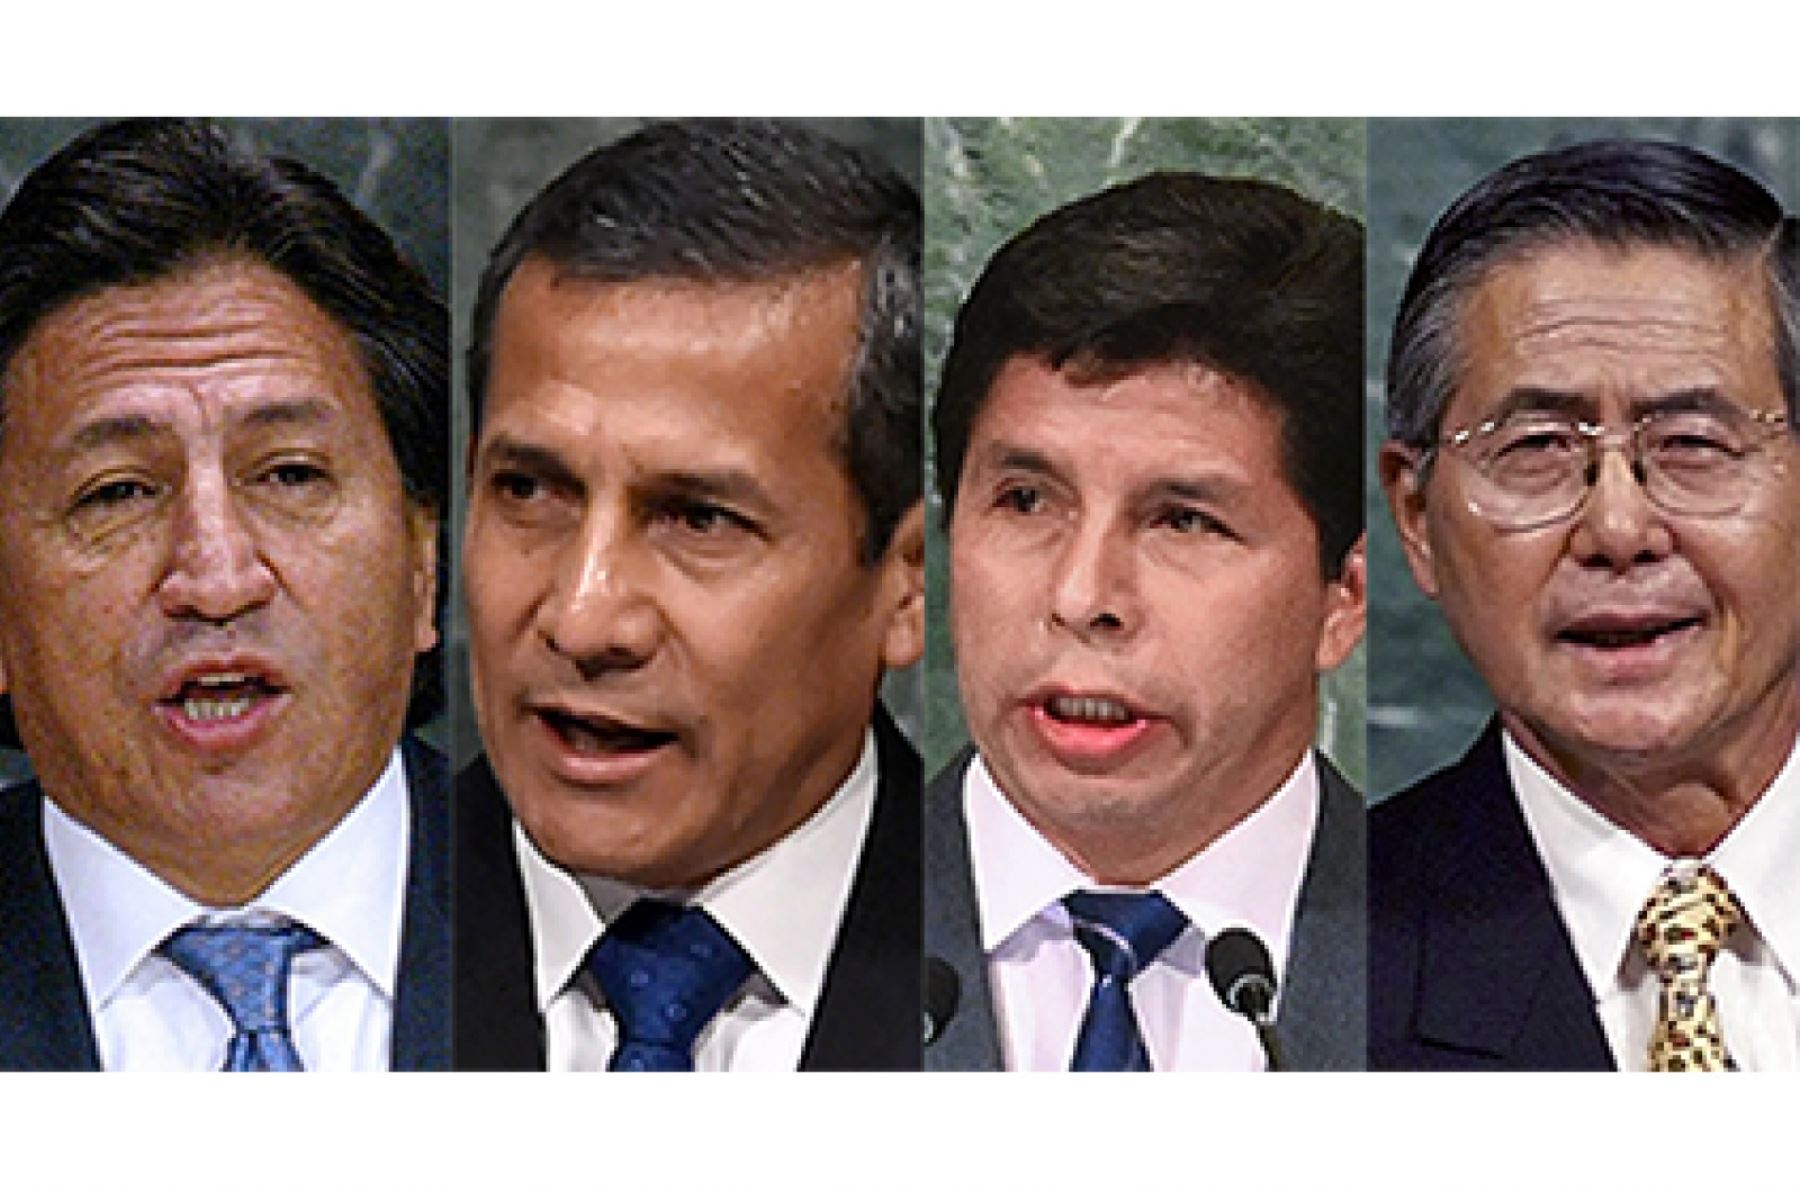 From left to right: Alejandro Toledo, Ollanta Humala, Pedro Castillo, and Alberto Fujimori.